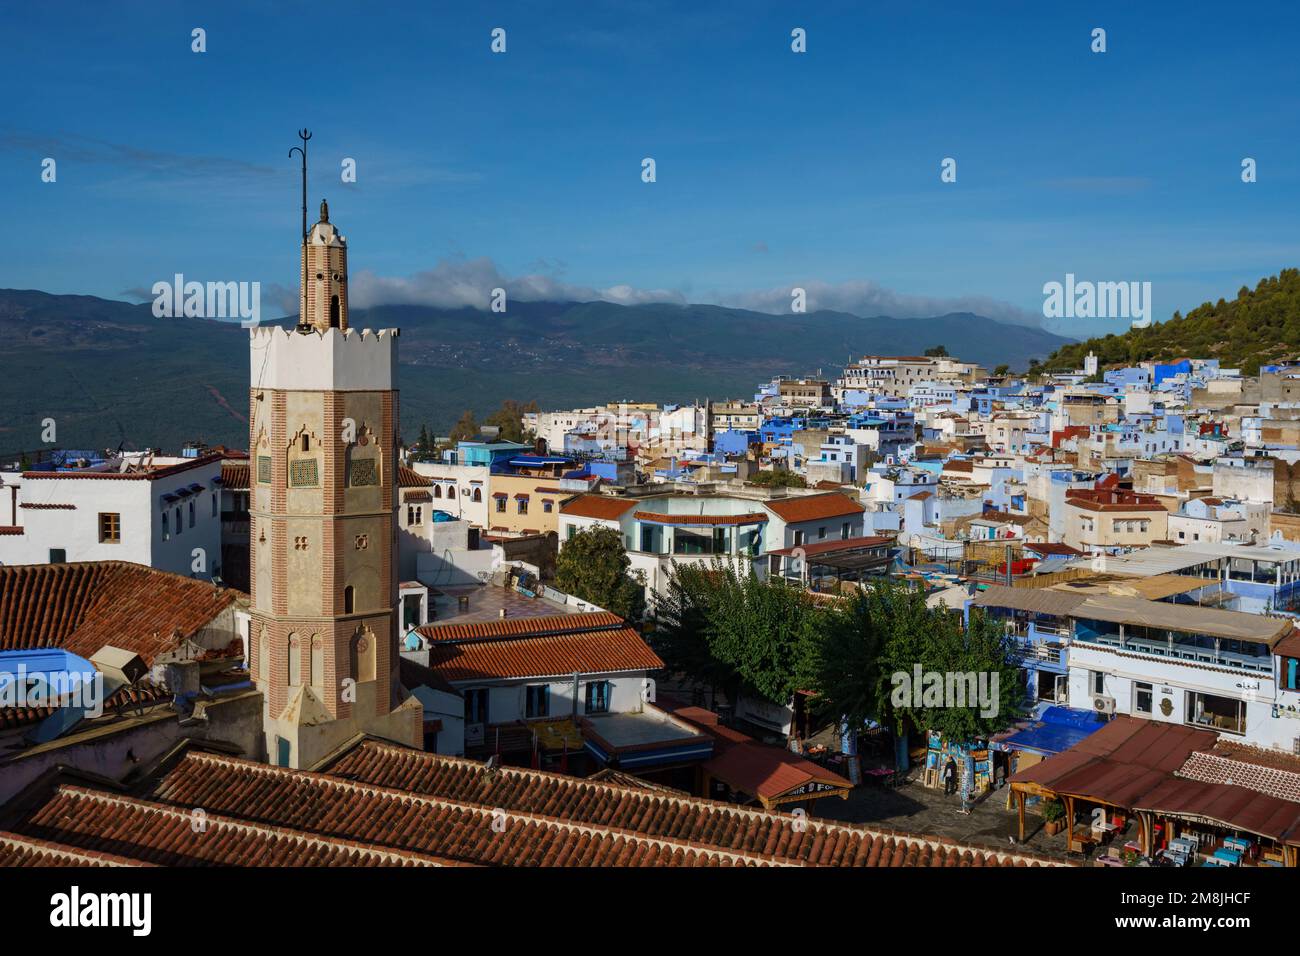 Afrique du Nord. Maroc. Chefchaouen. Le minaret de la Grande Mosquée de Chefchaouen et les maisons colorées en arrière-plan Banque D'Images